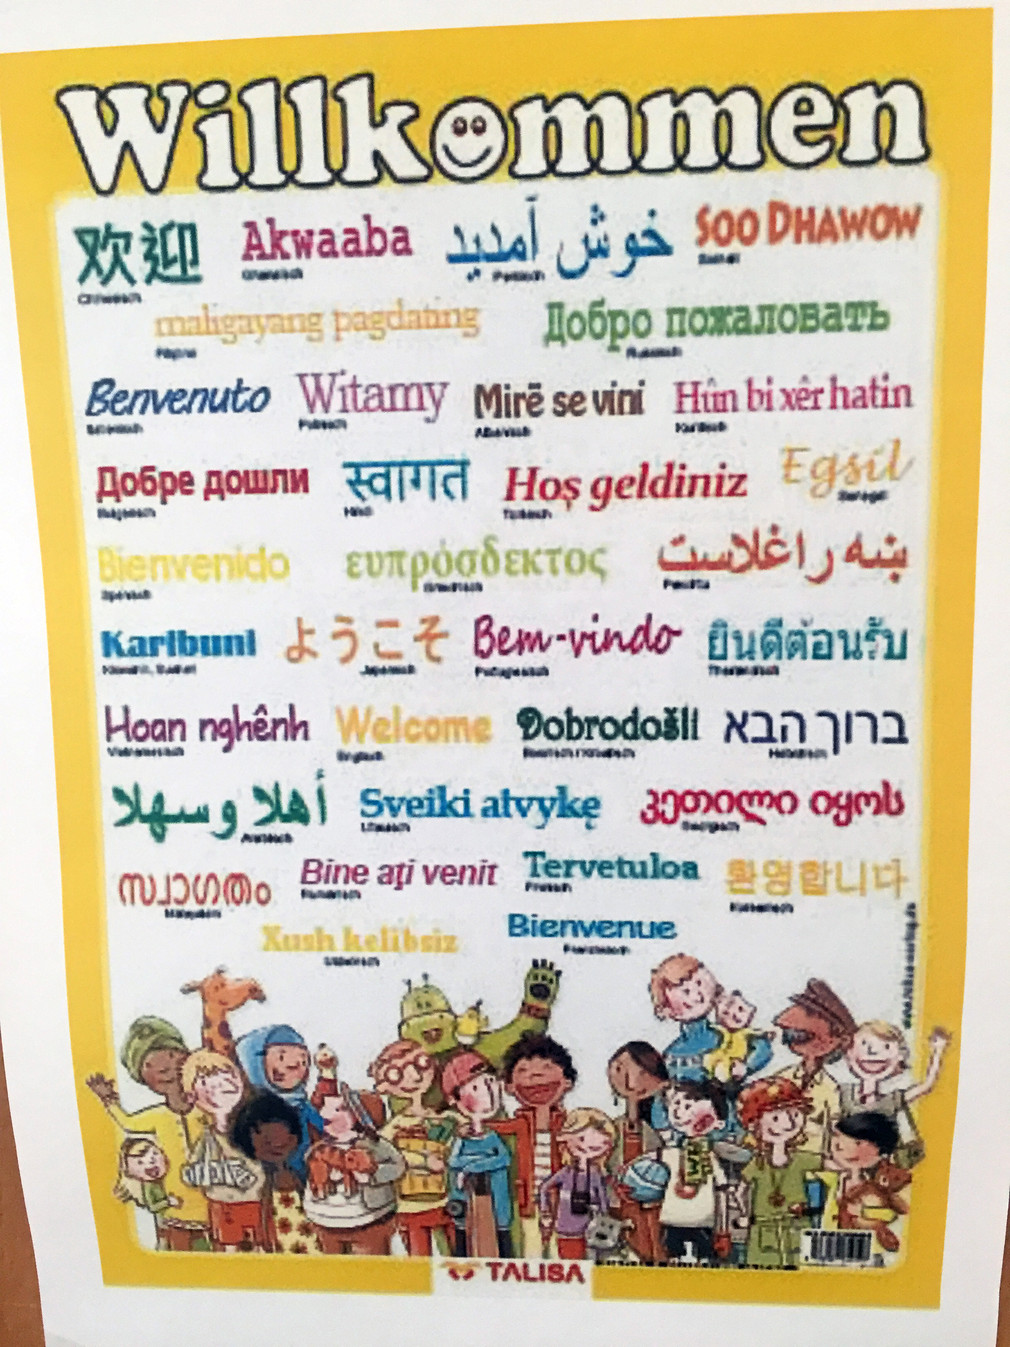 Plakat im Integrationszentrum der Stadt Weingarten im Kreis Ravensburg mit dem Wort "Willkommen" in viele verschiedene Sprachen übersetzt